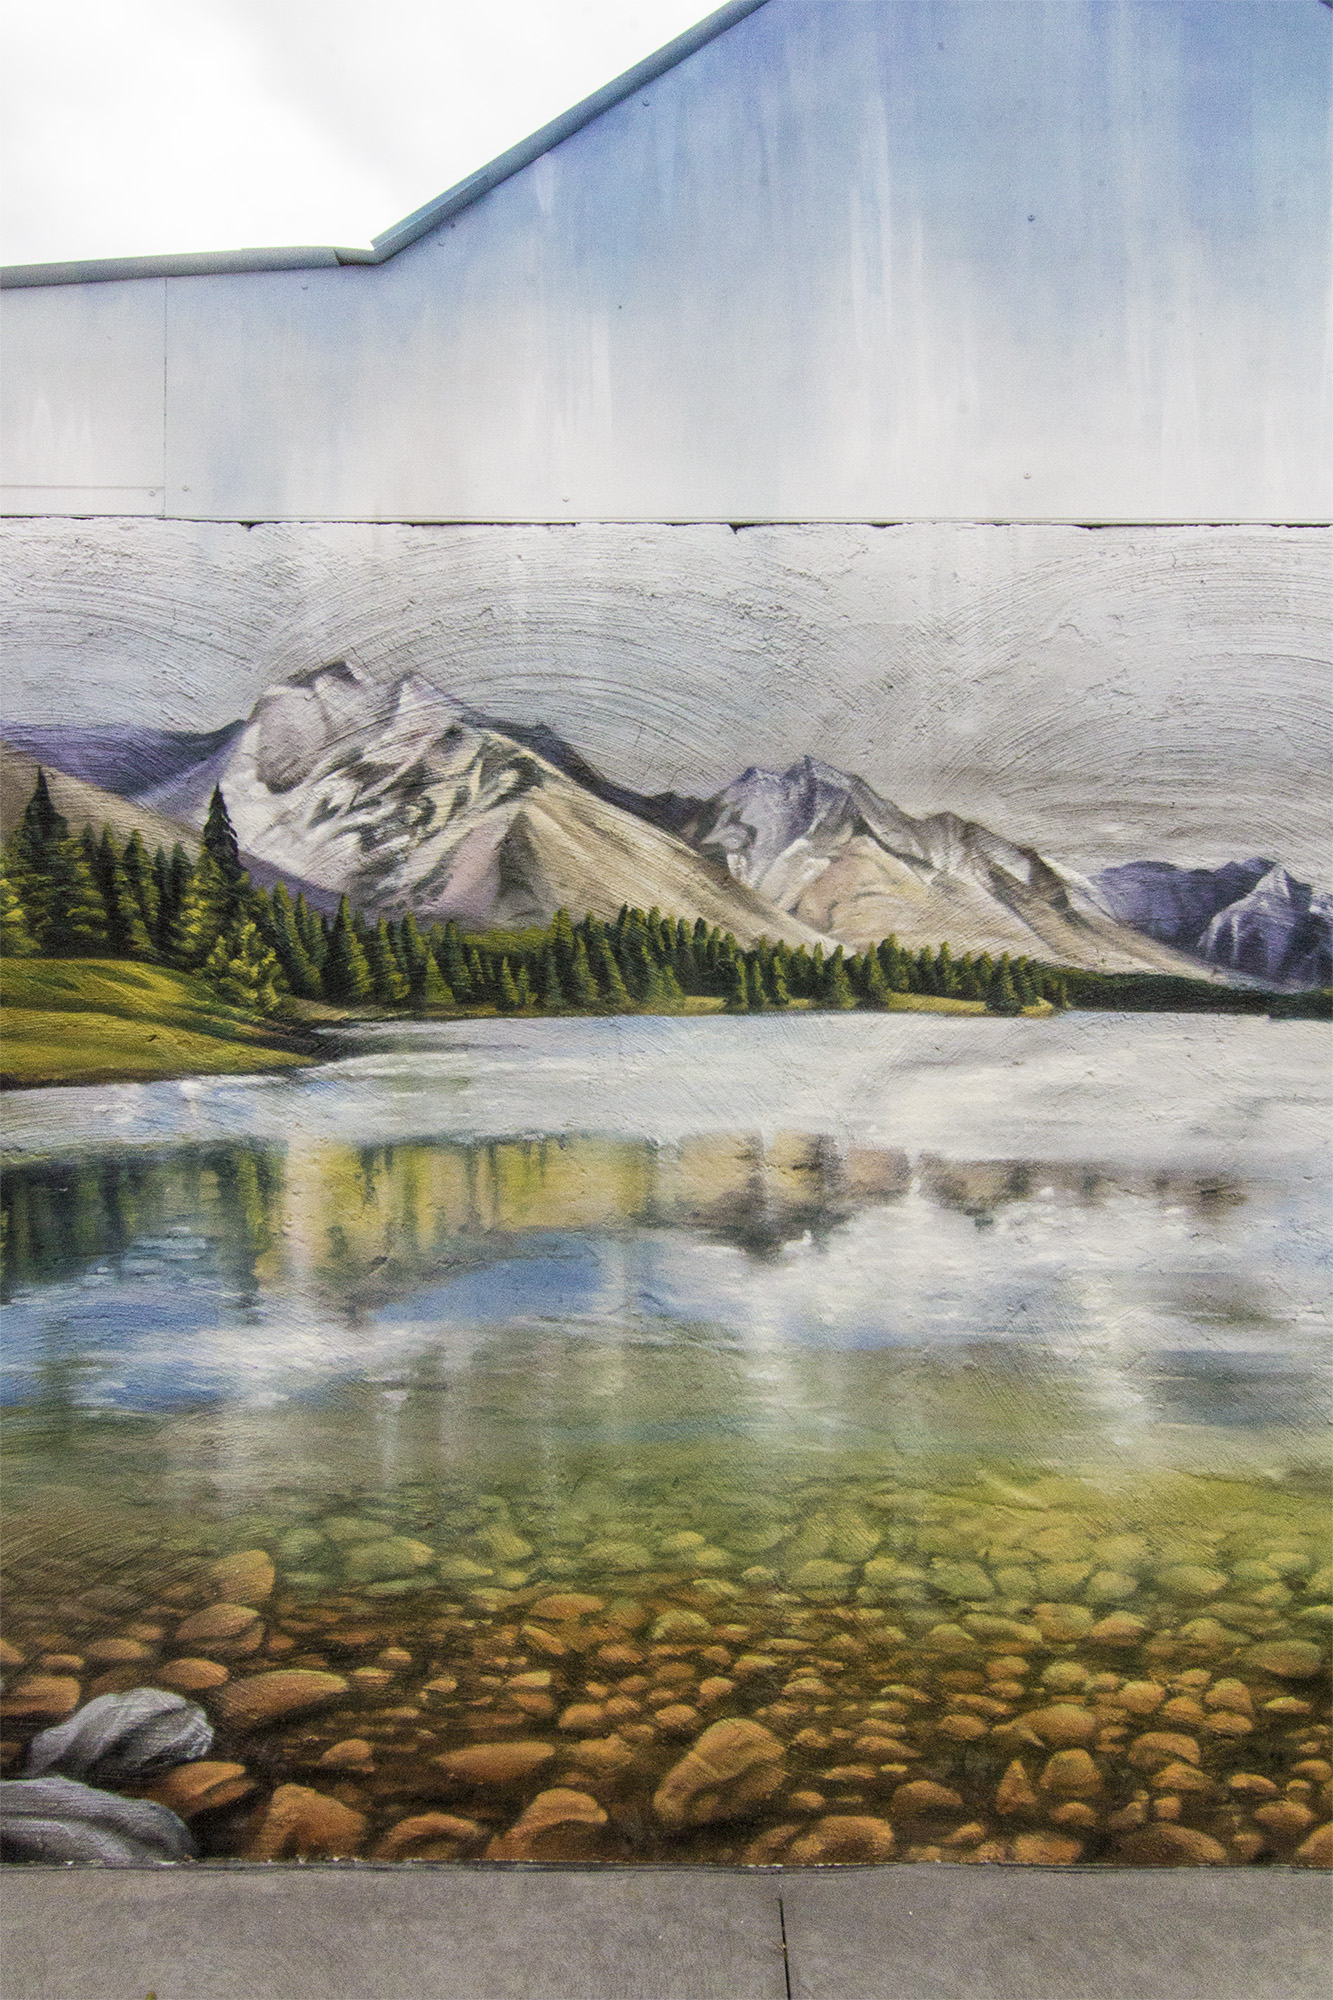 landscape graffiti mural